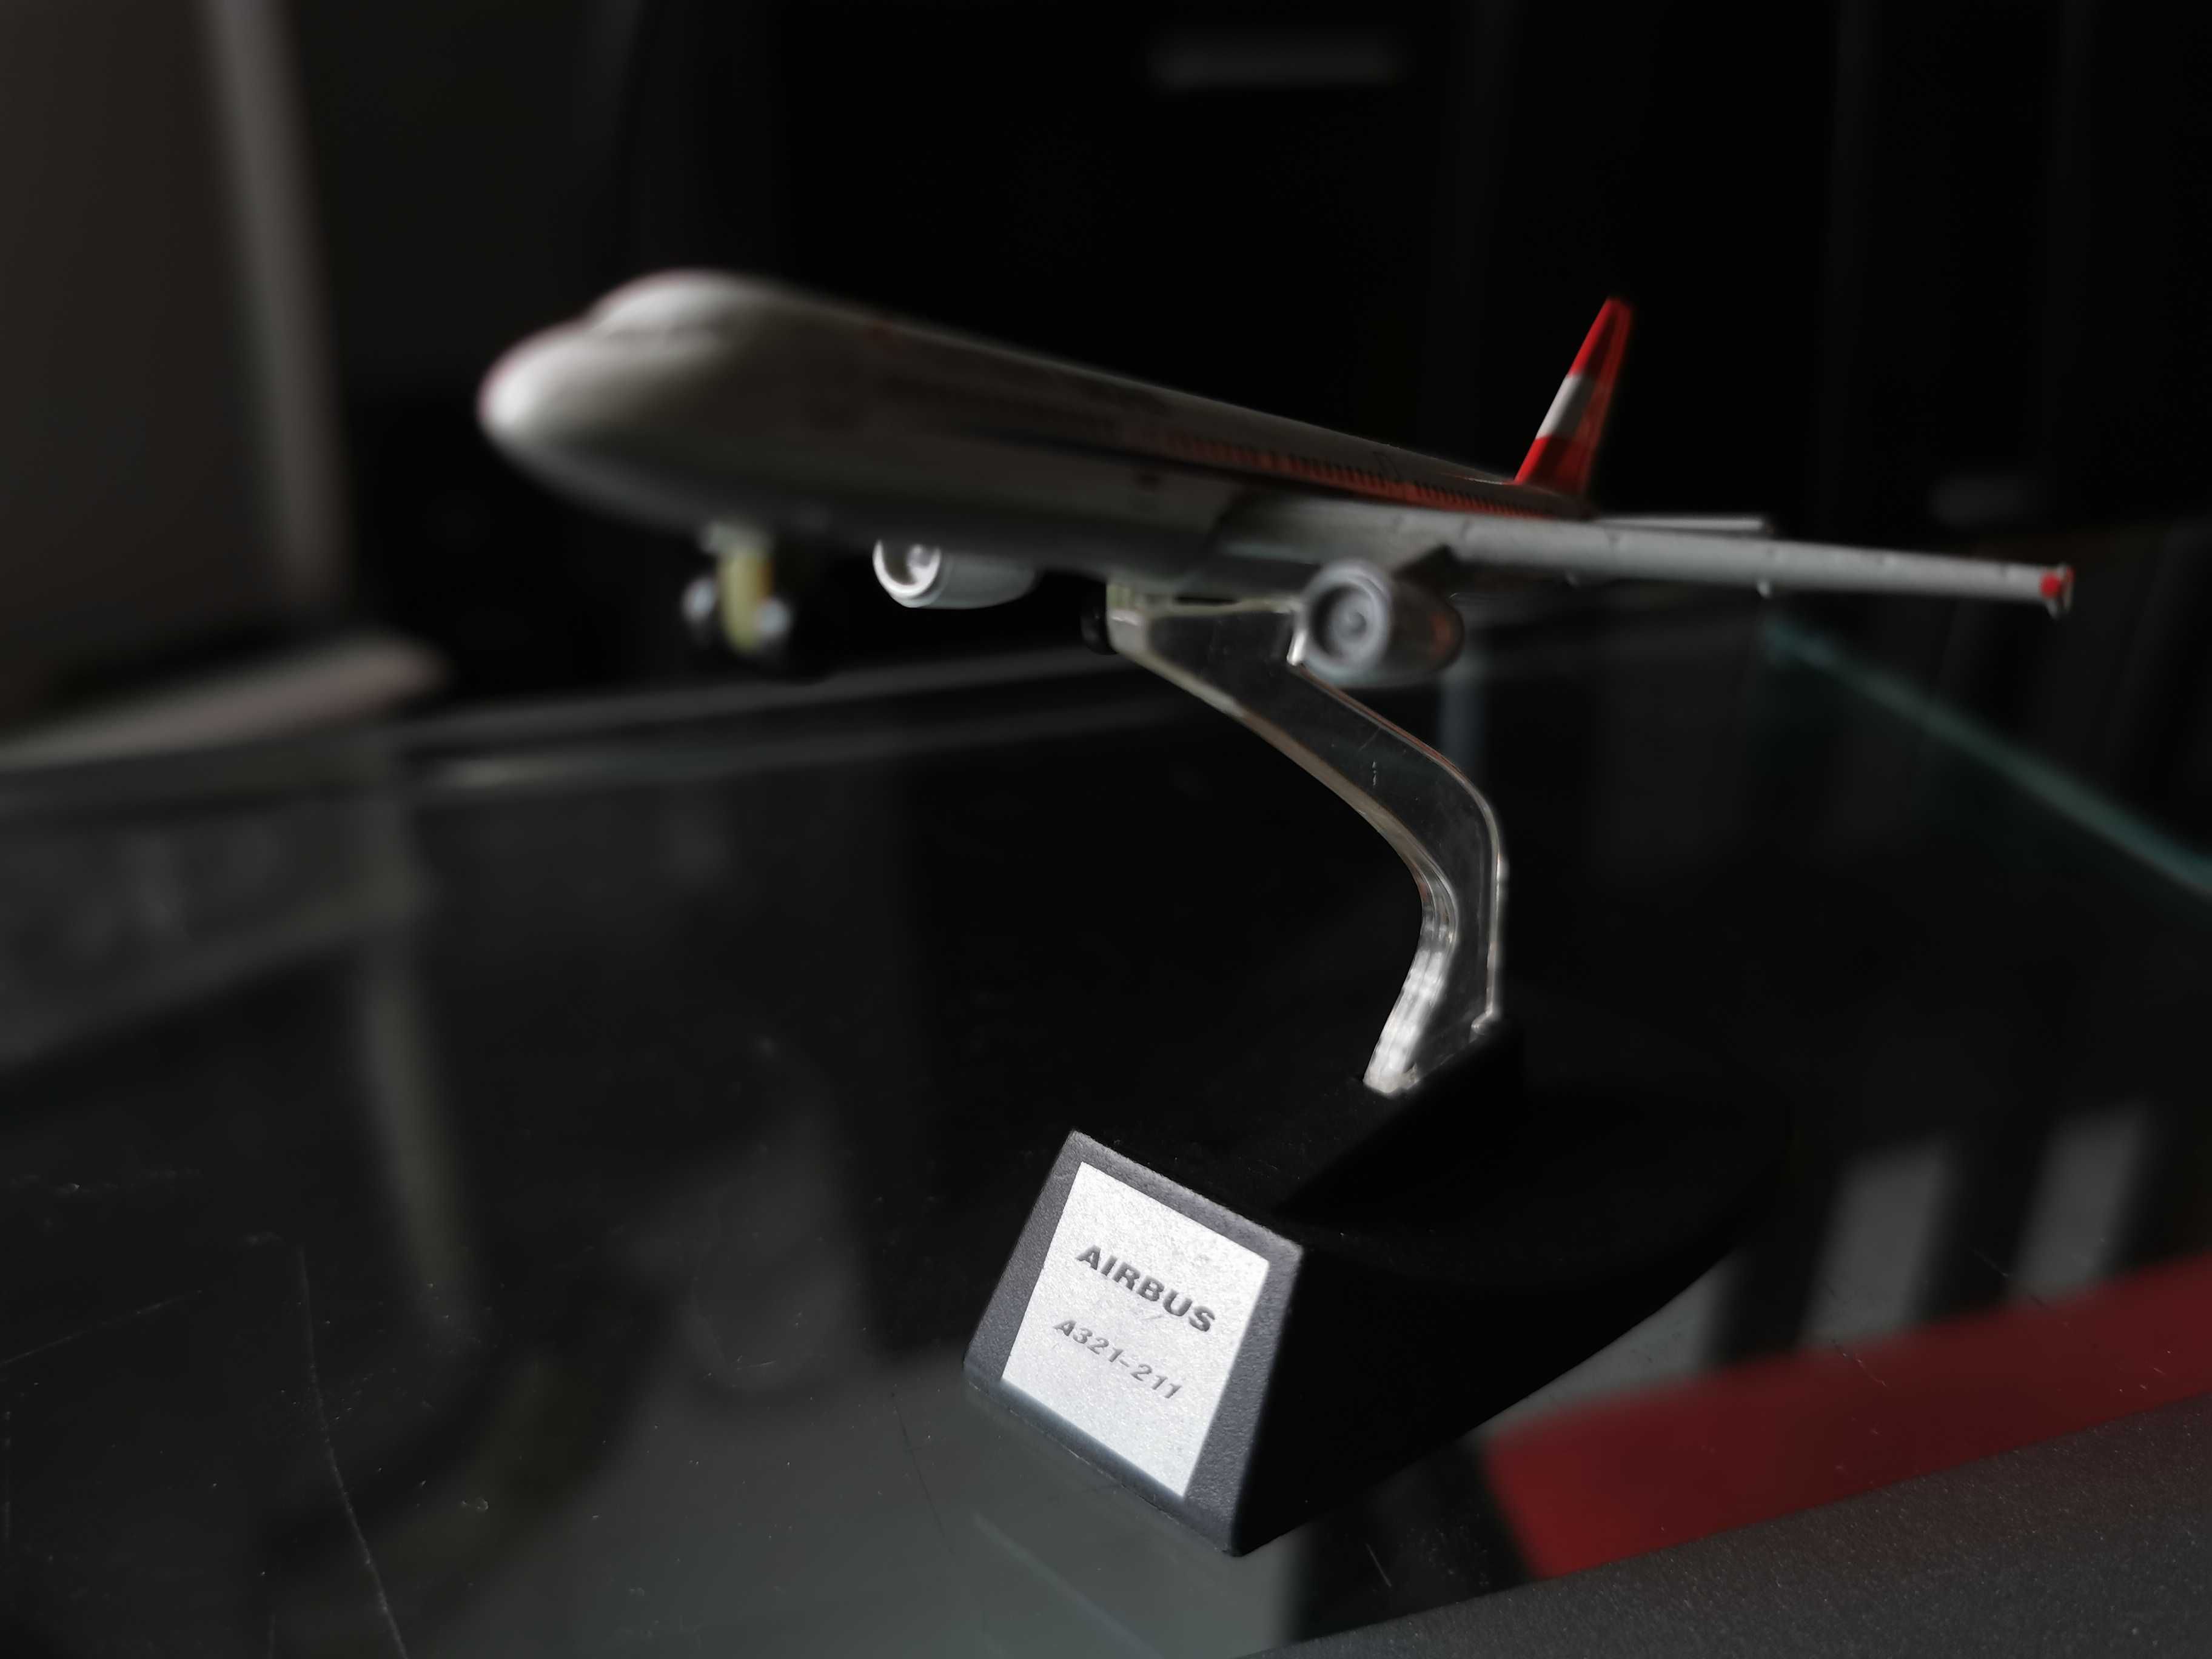 Aviões comerciais em miniatura